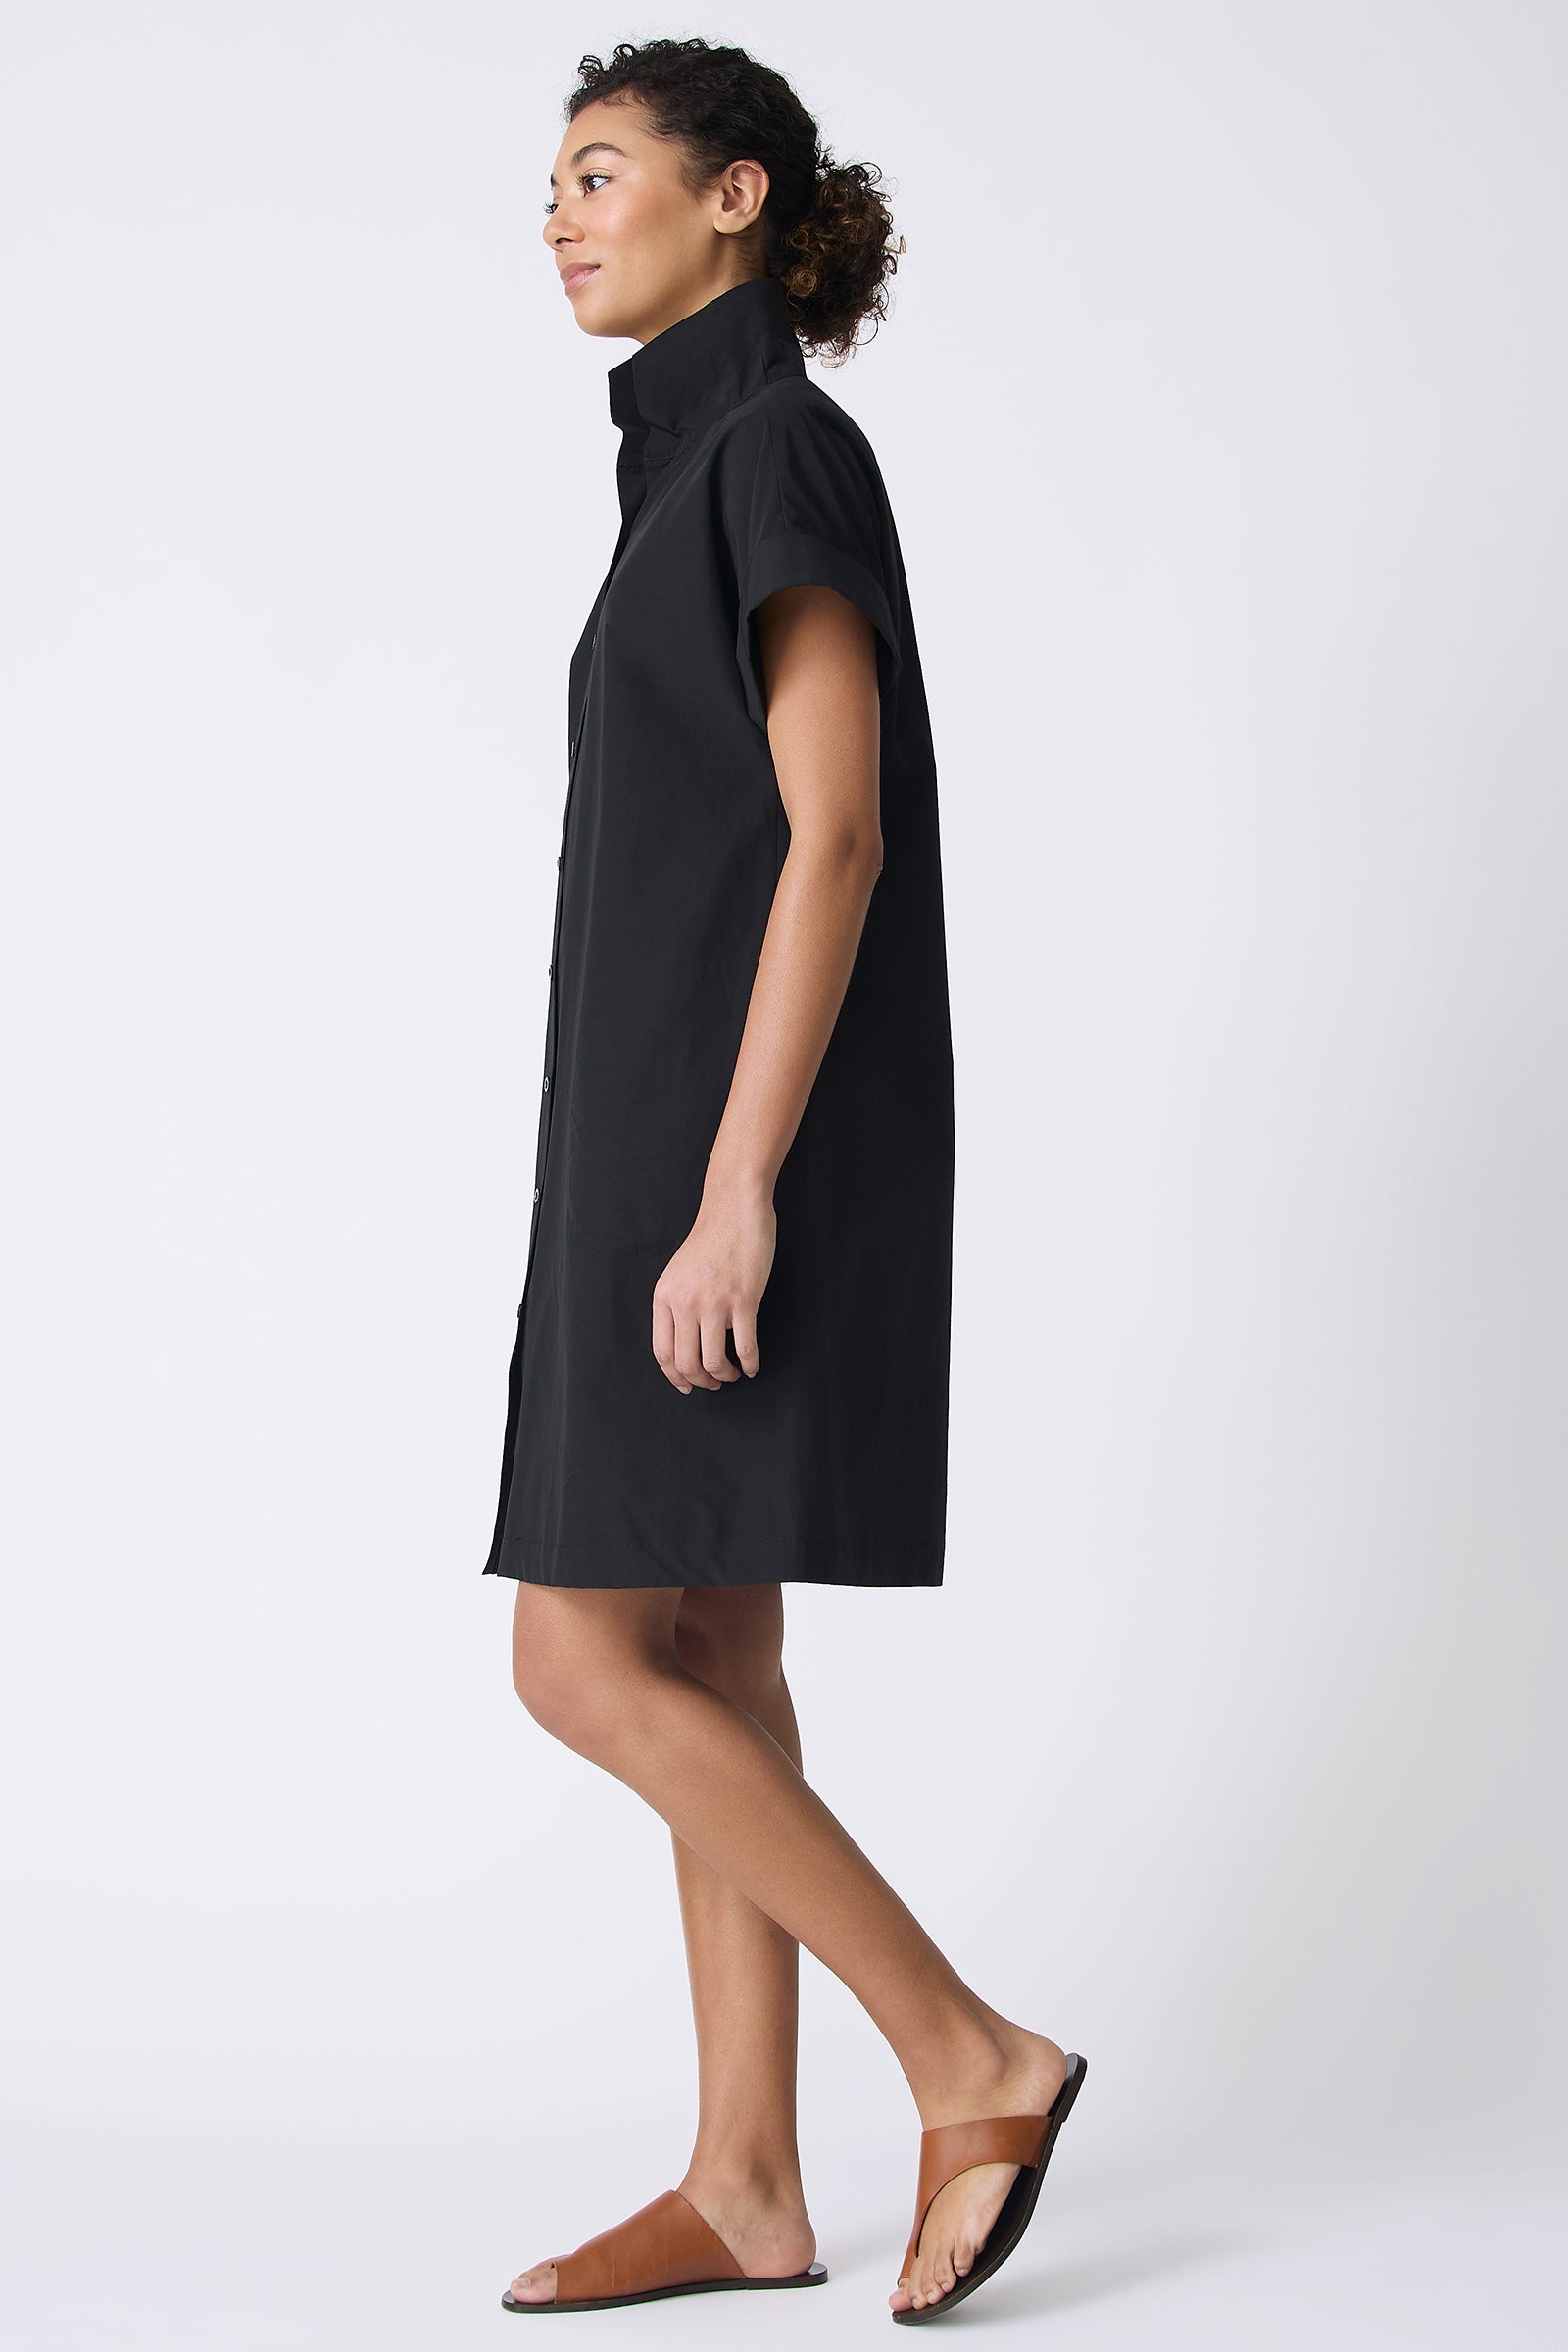 Kal Rieman Holly Kimono Dress in Black on model walking full side view